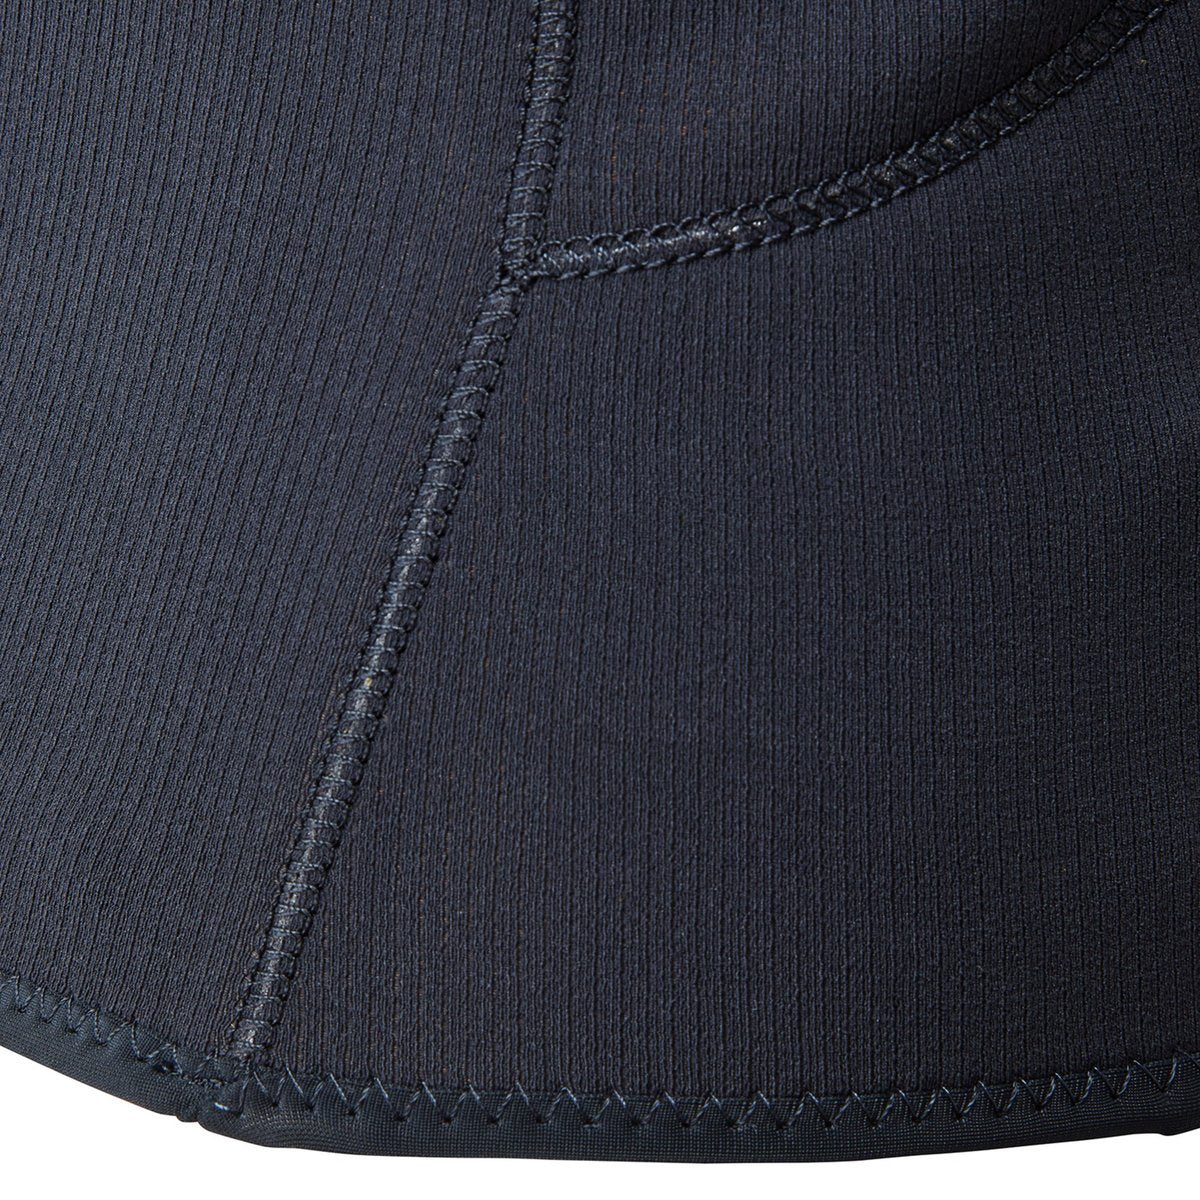 Gill Zentherm 2.0 Top 3 mm wetsuit top blauw kinder